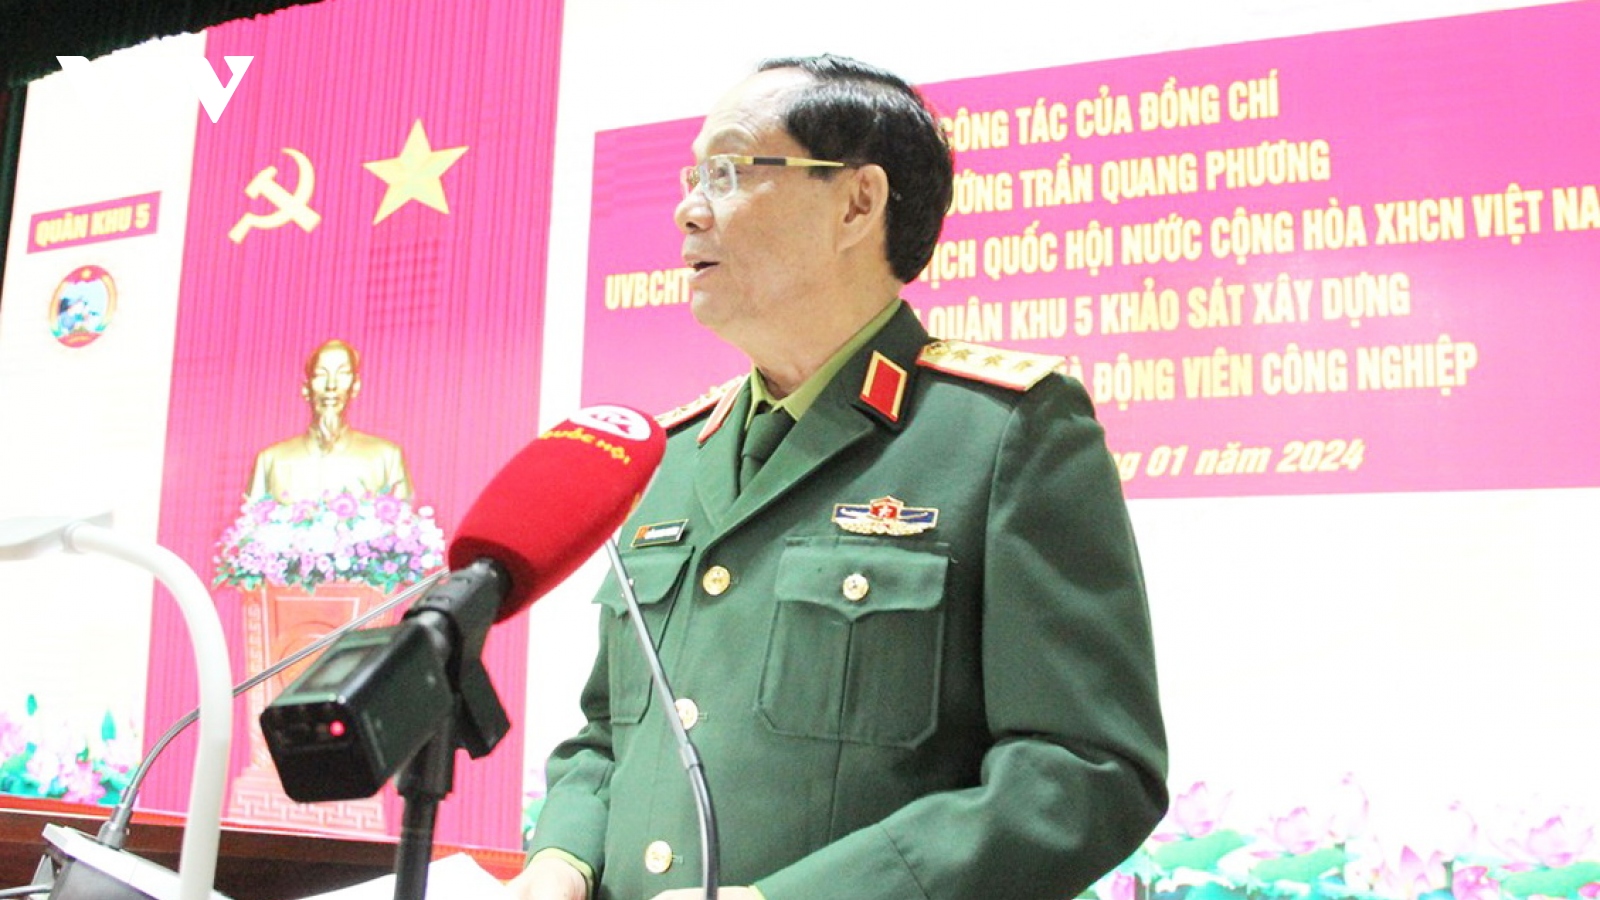 Phó Chủ tịch Quốc hội Trần Quang Phương làm việc với Quân khu 5